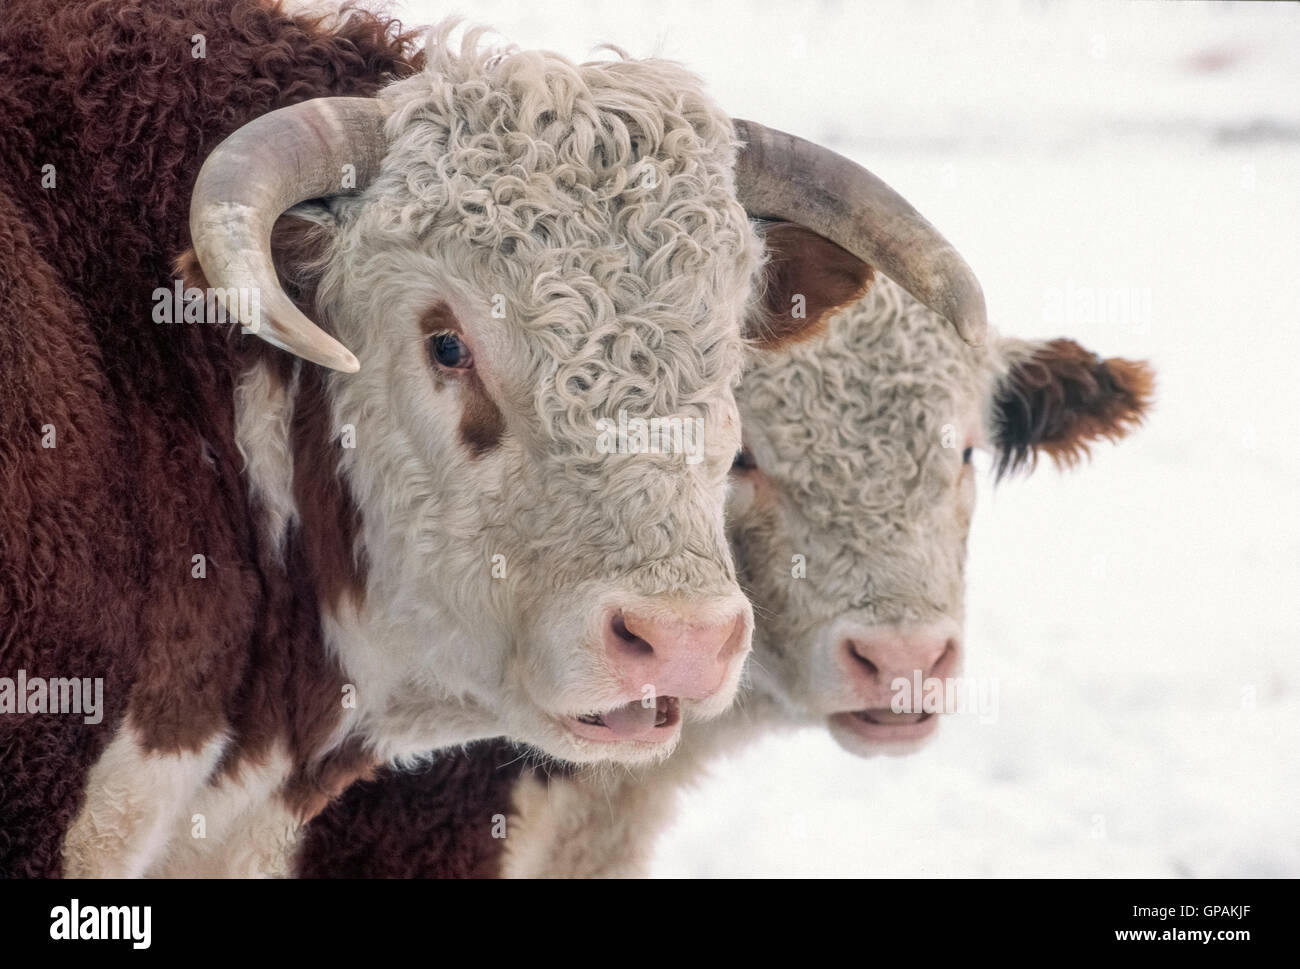 Lockiges Haar weiß markiert die hübschen Gesichter der Hereford-Rinder, eine historische und beliebte Rasse der Rinder, die in Herefordshire in Großbritannien in den frühen 1700er Jahren entstanden. Diese gehörnten Stier und Kuh Begleiter sind mit dicken Wintermäntel gesehen, während der Nahrungssuche auf einer Ranch in Wyoming, USA ausgelöst wird. Stockfoto